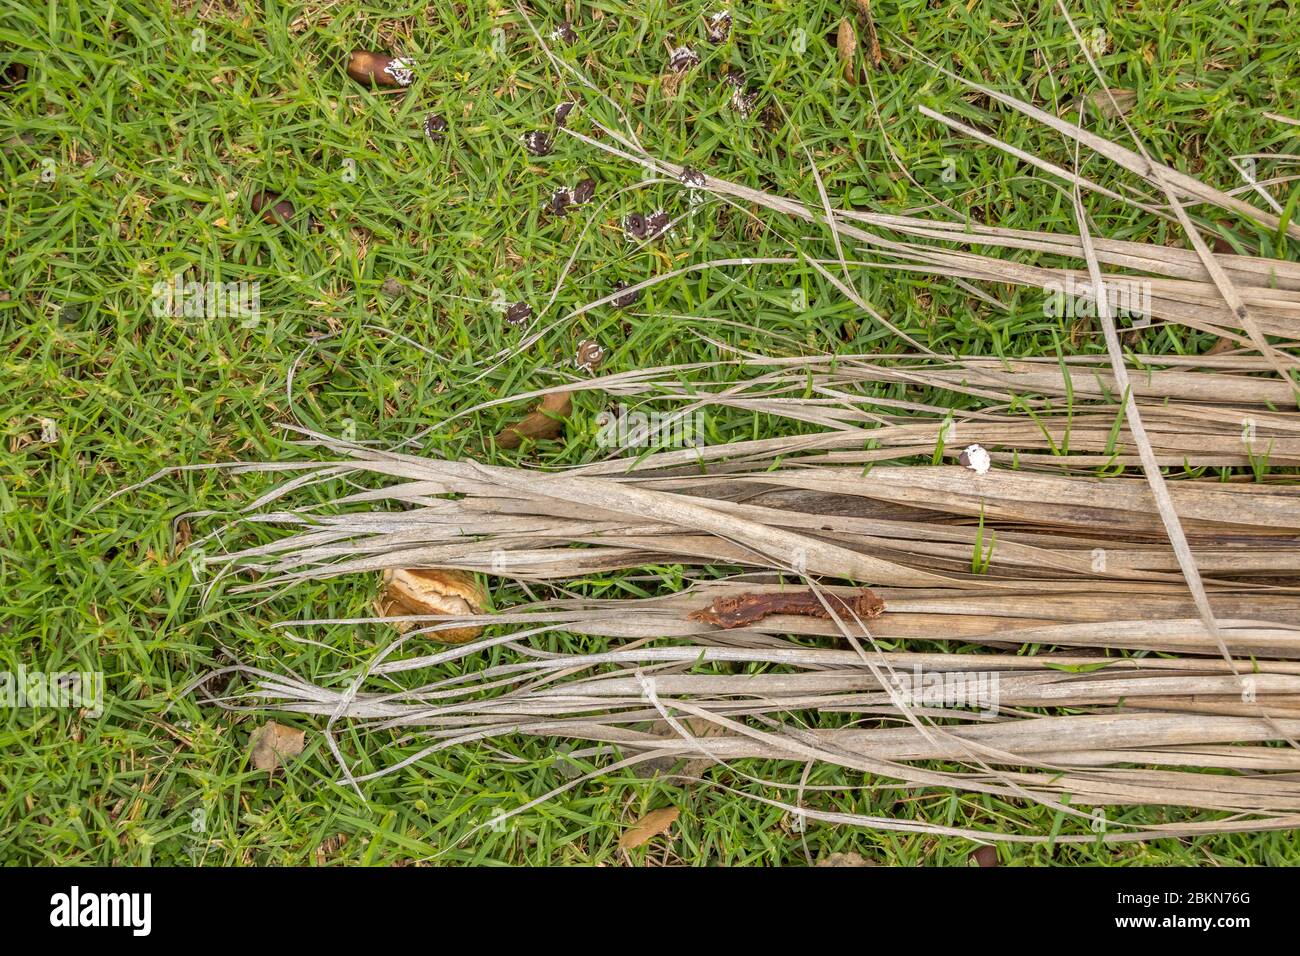 Lange trockene Pflanze Blattstränge auf einem Fleck von grünem Gras isoliert Stockfoto